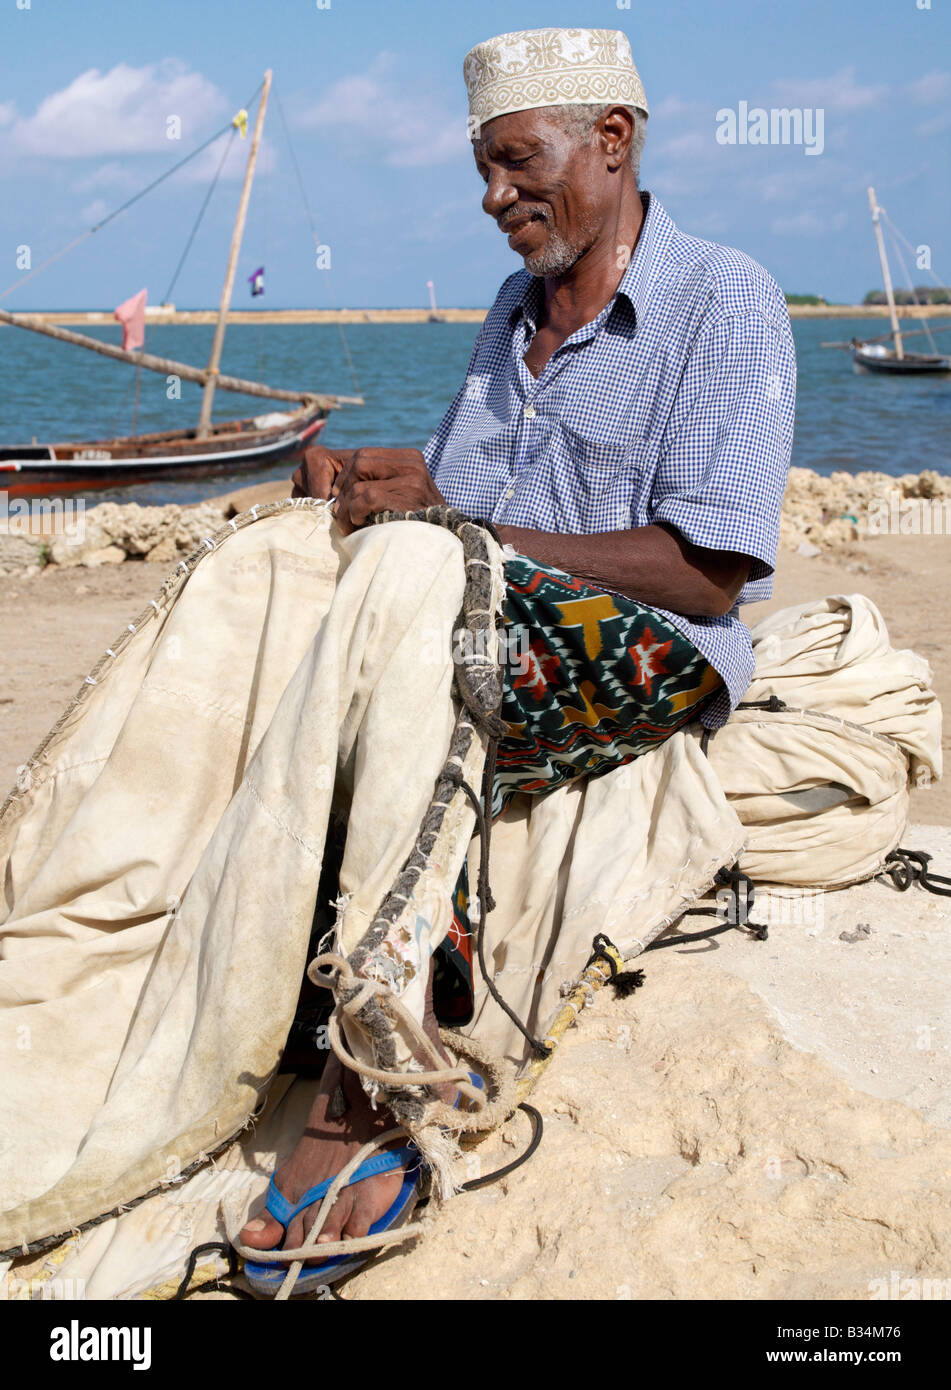 Kenya, Kisingitini, Pate Island. A fisherman repairs the sail of his wooden sailing boat, known as mashua, along the waterfront Stock Photo